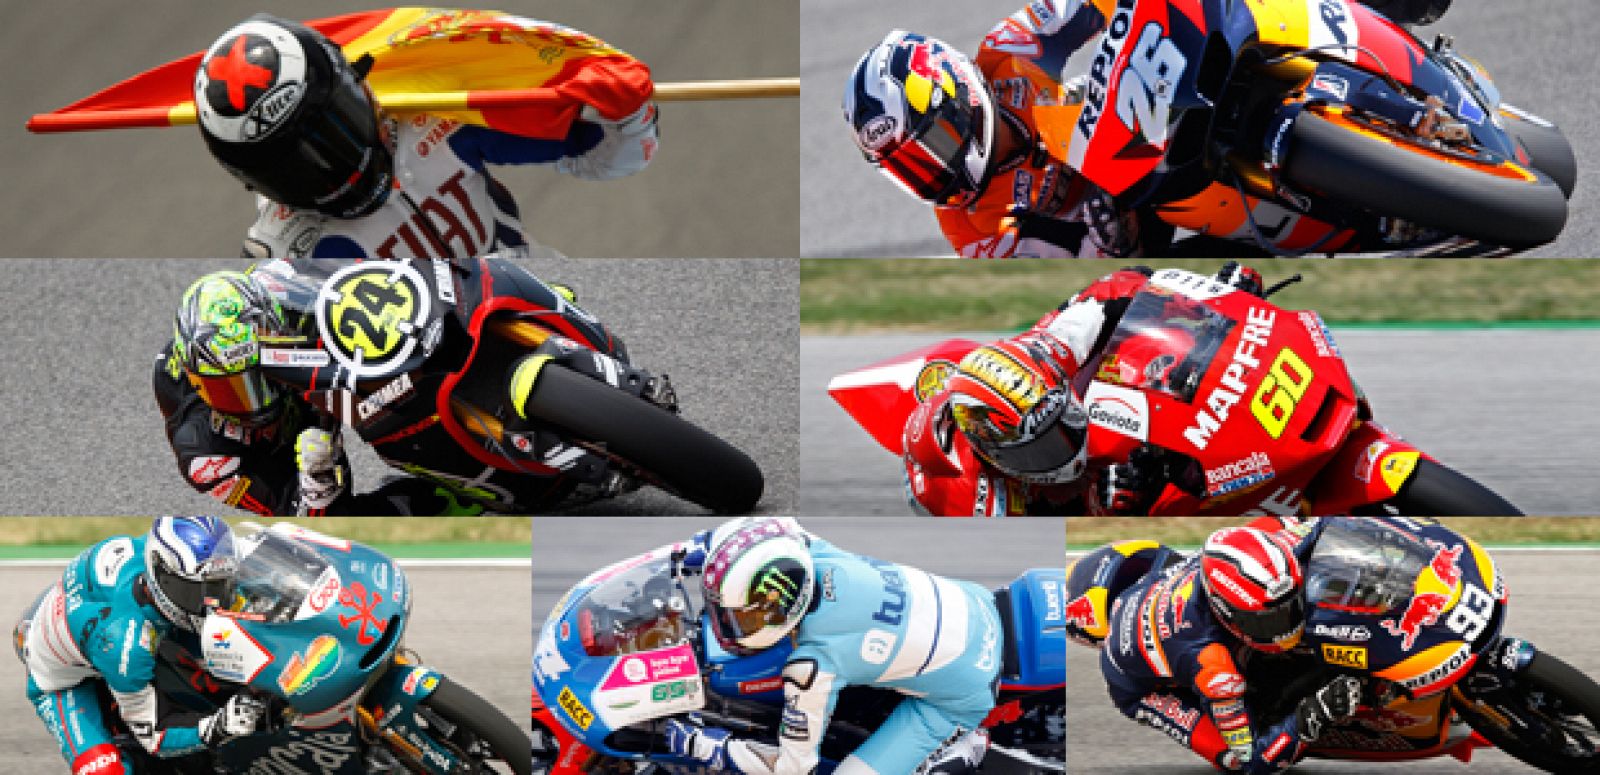 Los pilotos españoles están a un paso de conseguir los tres títulos.